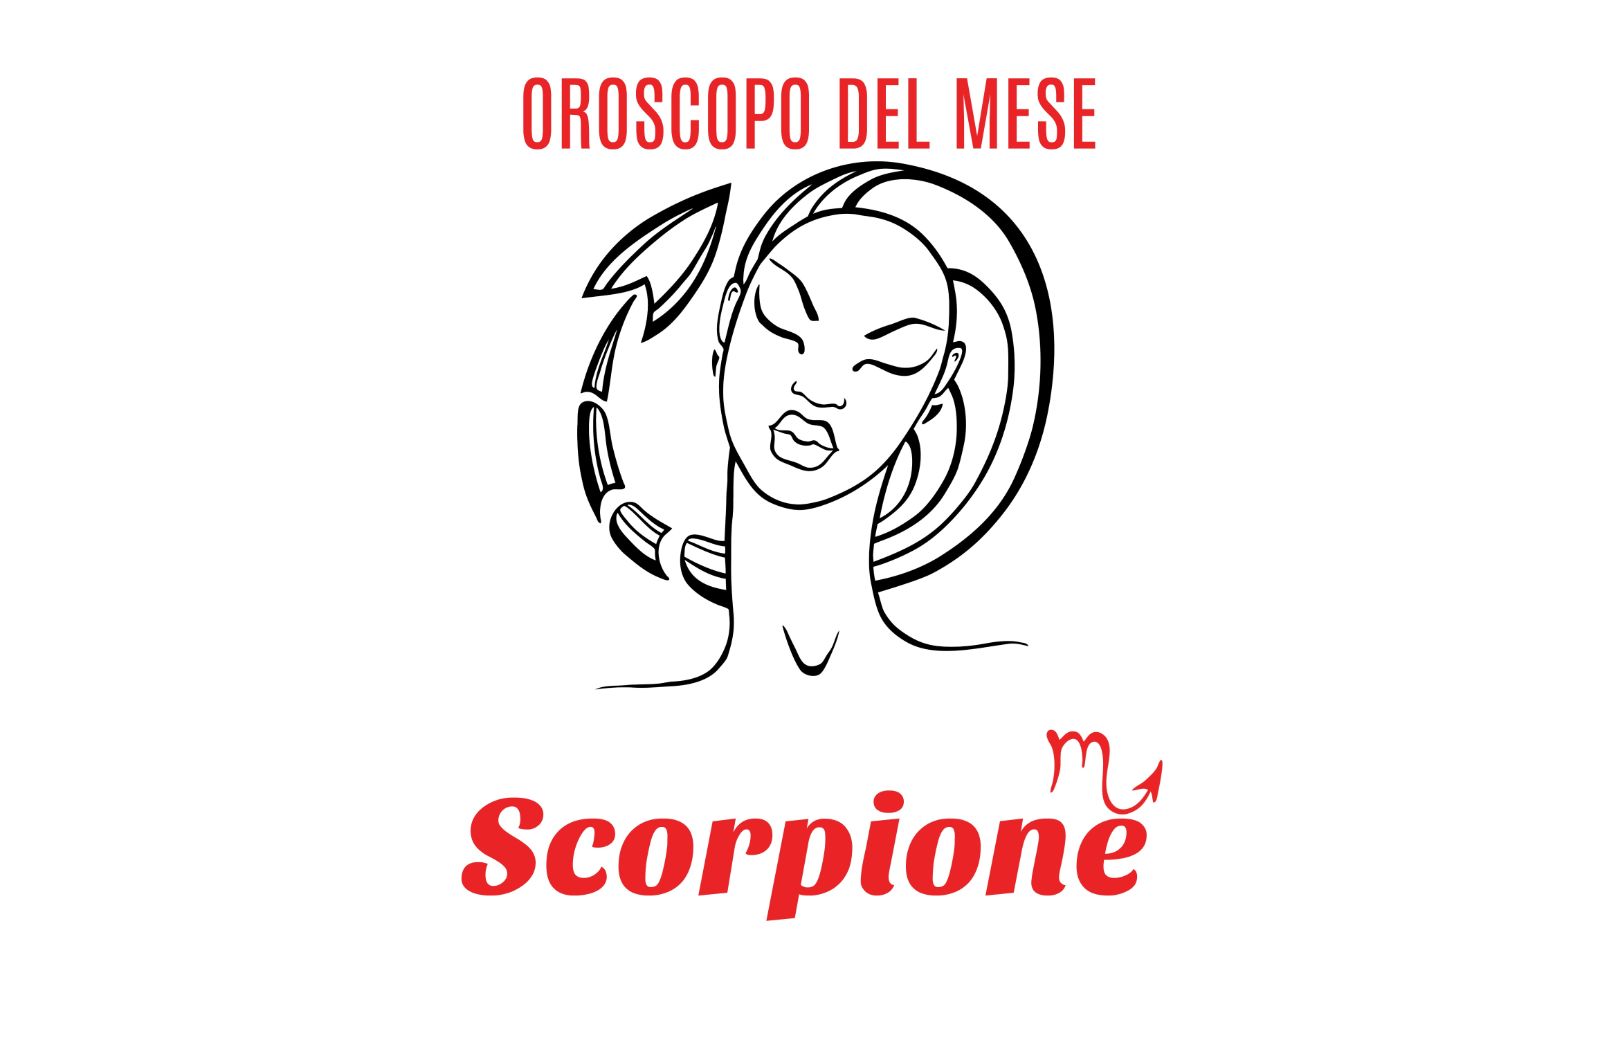 Oroscopo del mese: Scorpione - agosto 2020